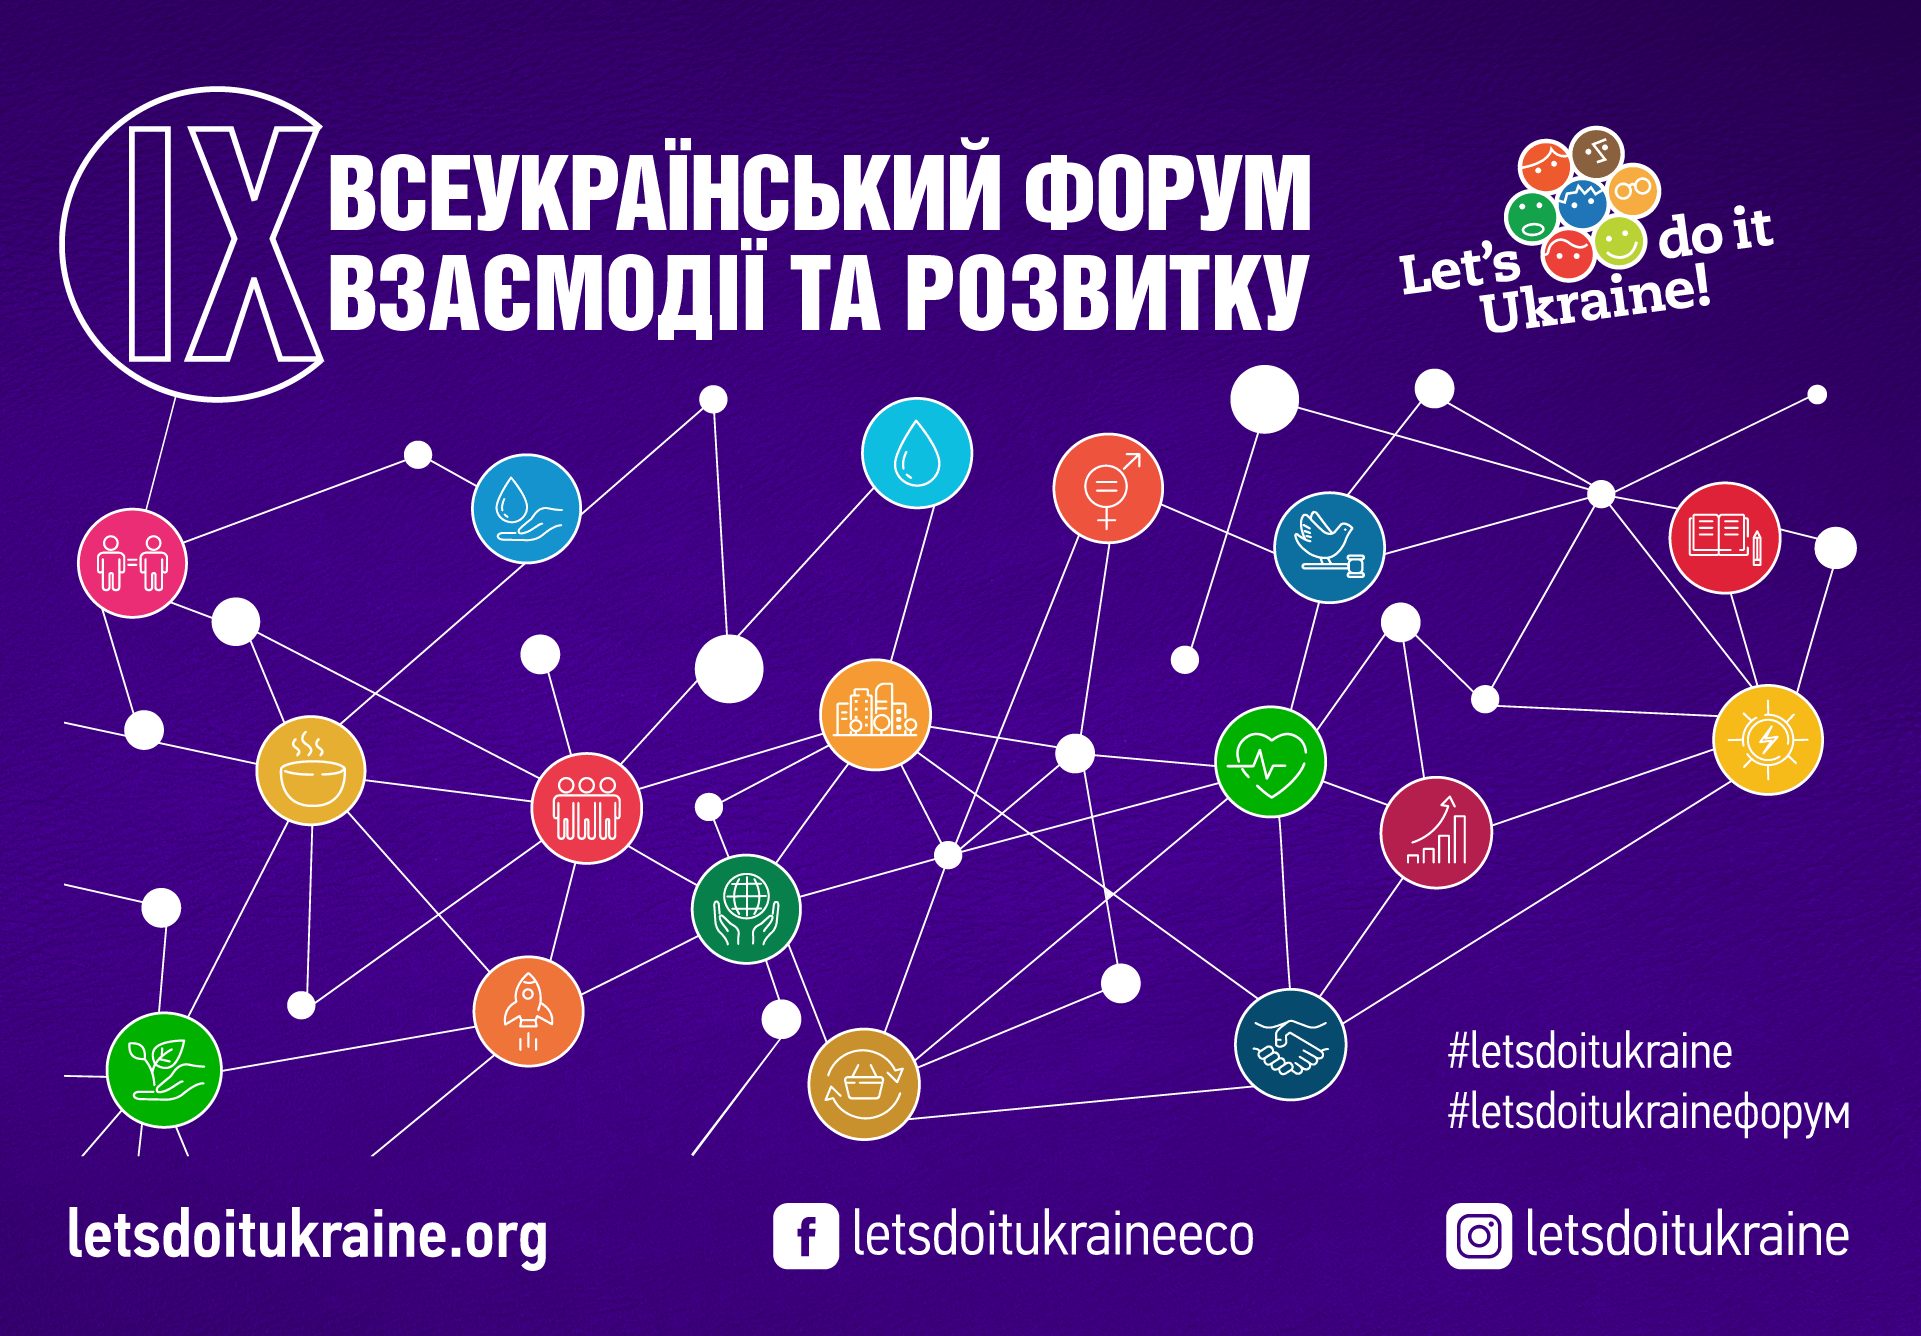 ІХ Всеукраїнський форум взаємодії та розвитку. Відтепер у новому форматі!